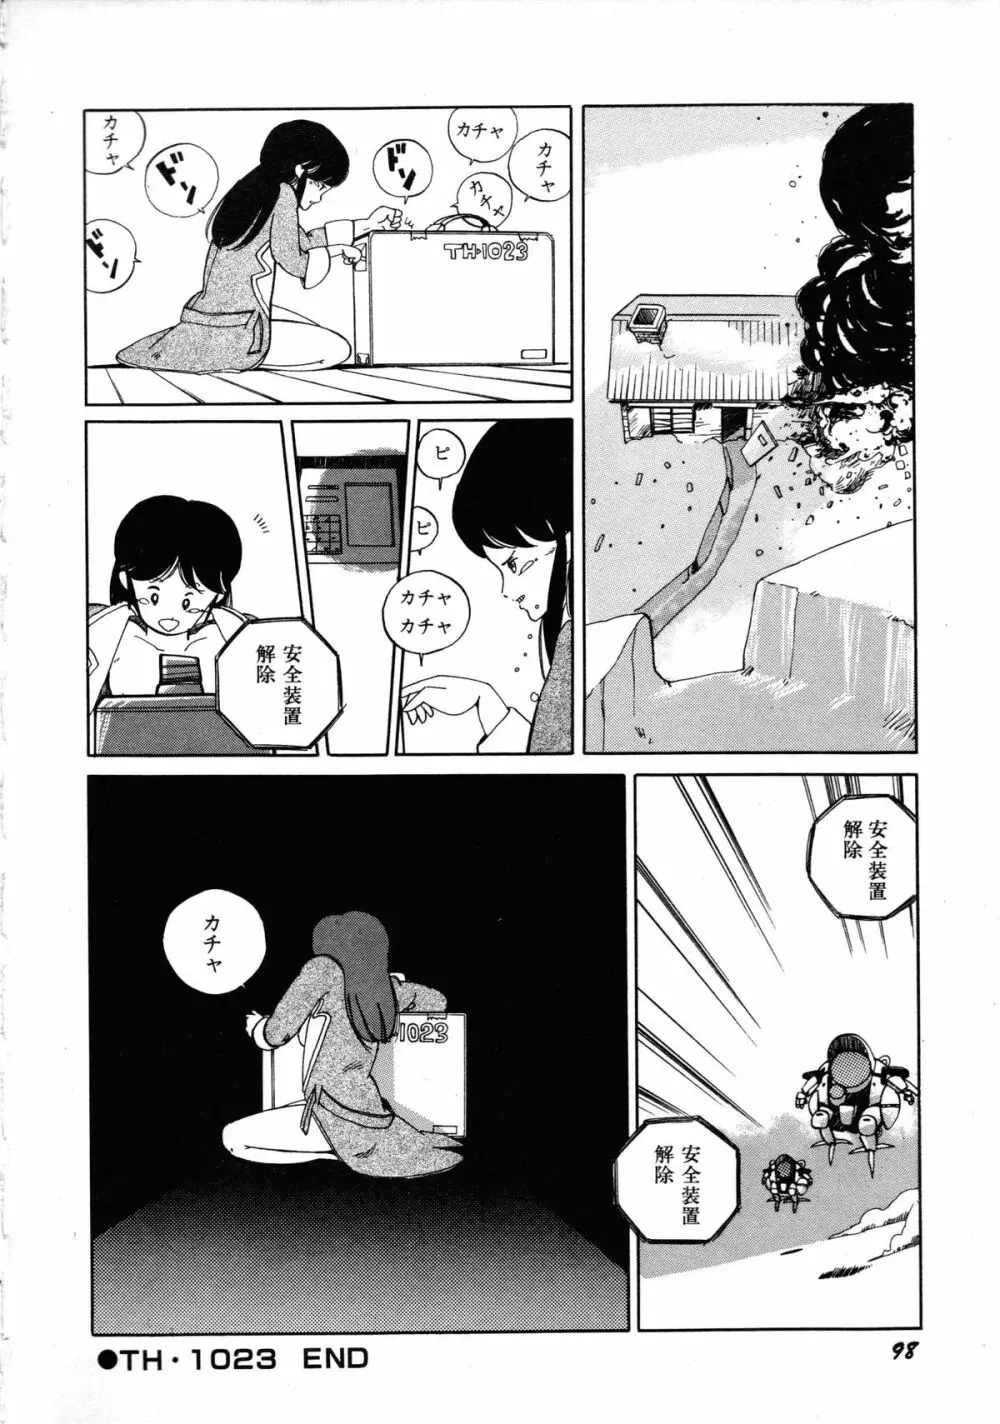 ロボット&美少女傑作選 レモン・ピープル1982-1986 102ページ